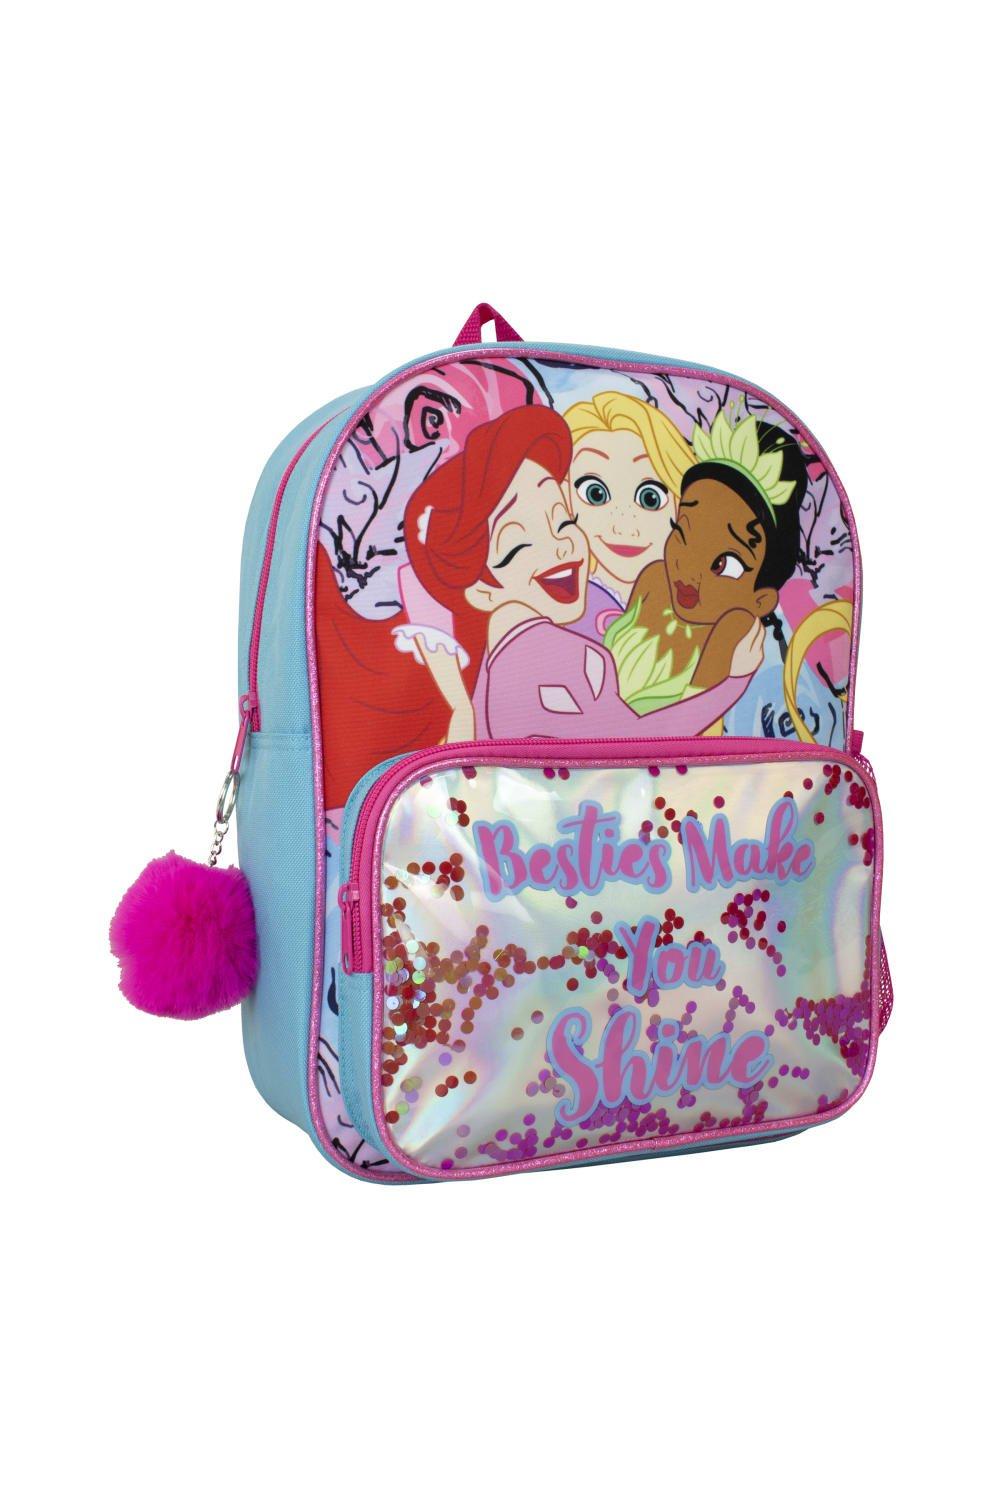 Рюкзак принцессы с помпоном с изображением Ариэль Рапунцель и Тианы Disney, синий рюкзак коллекции принцесса от disney